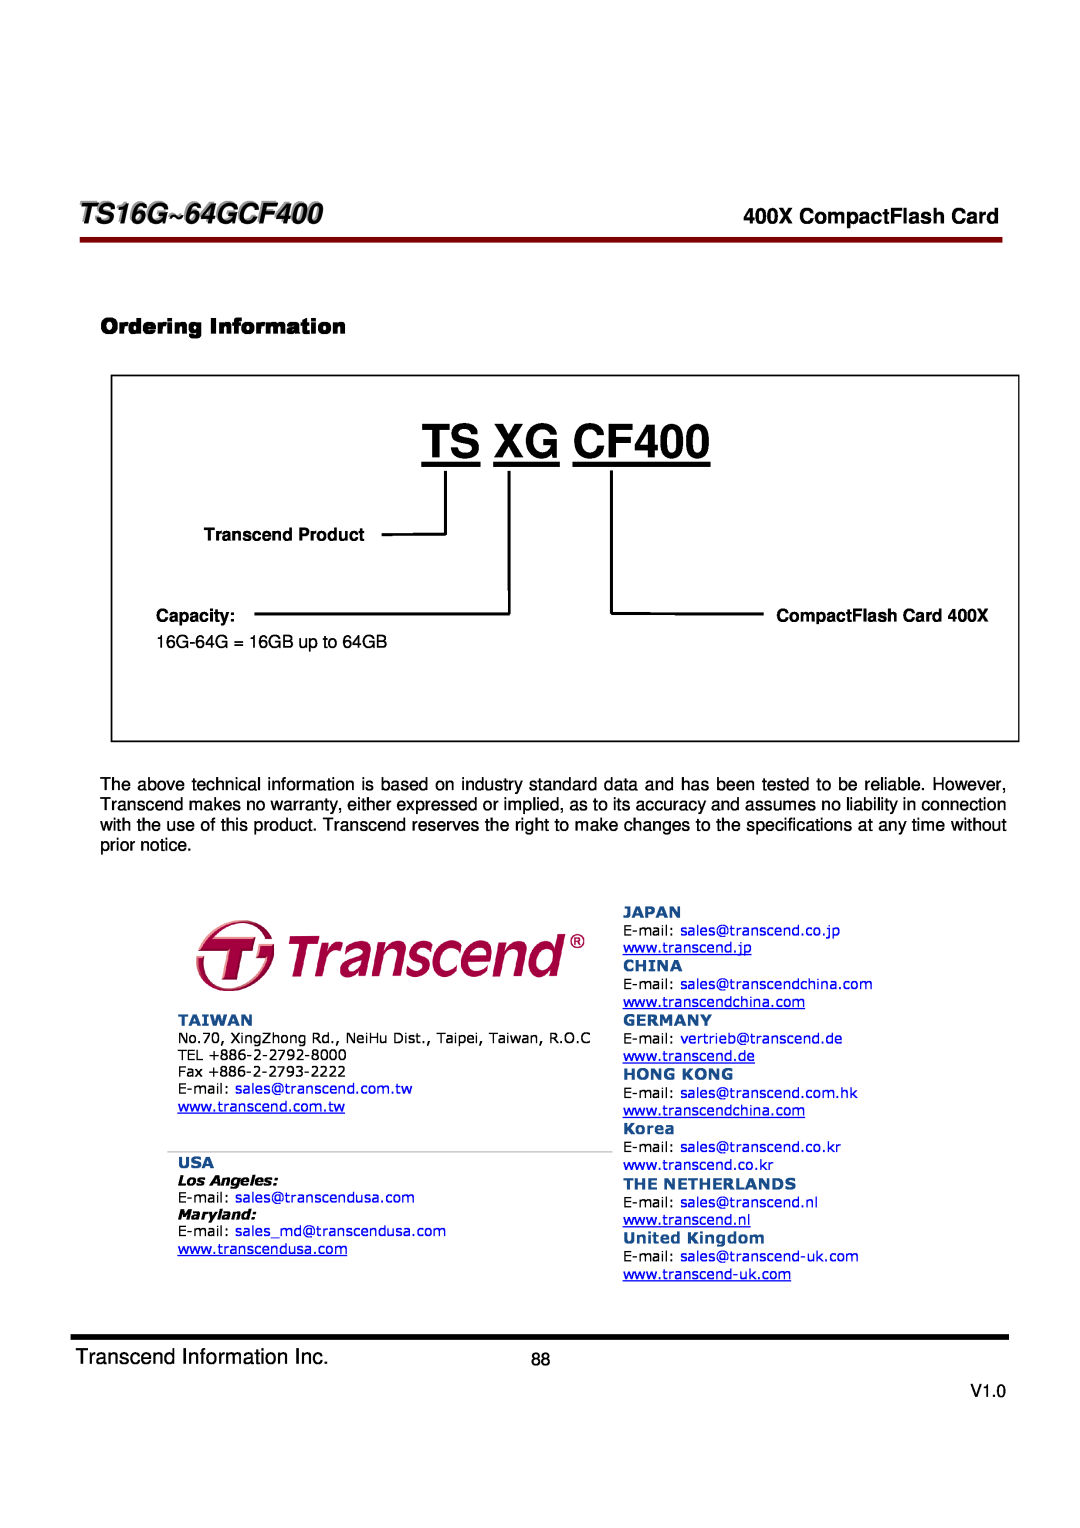 Transcend Information TS16G-64GCF400 Ordering Information, TS XG CF400 XX-S = SLC, TS16G~64GCF400, 400X CompactFlash Card 